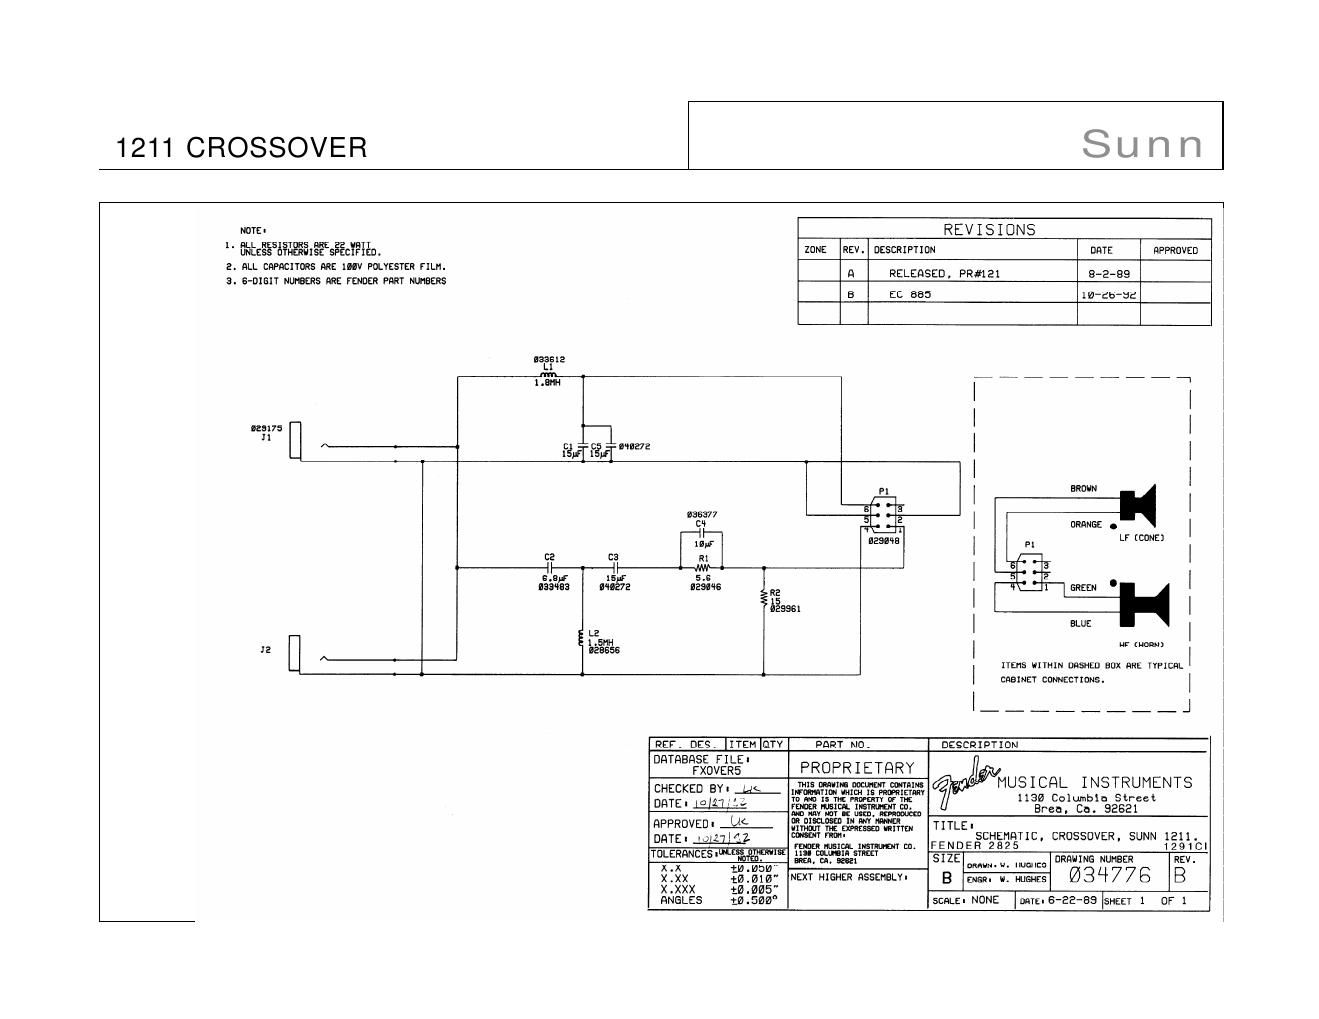 sunn 12xx series crossover schematics